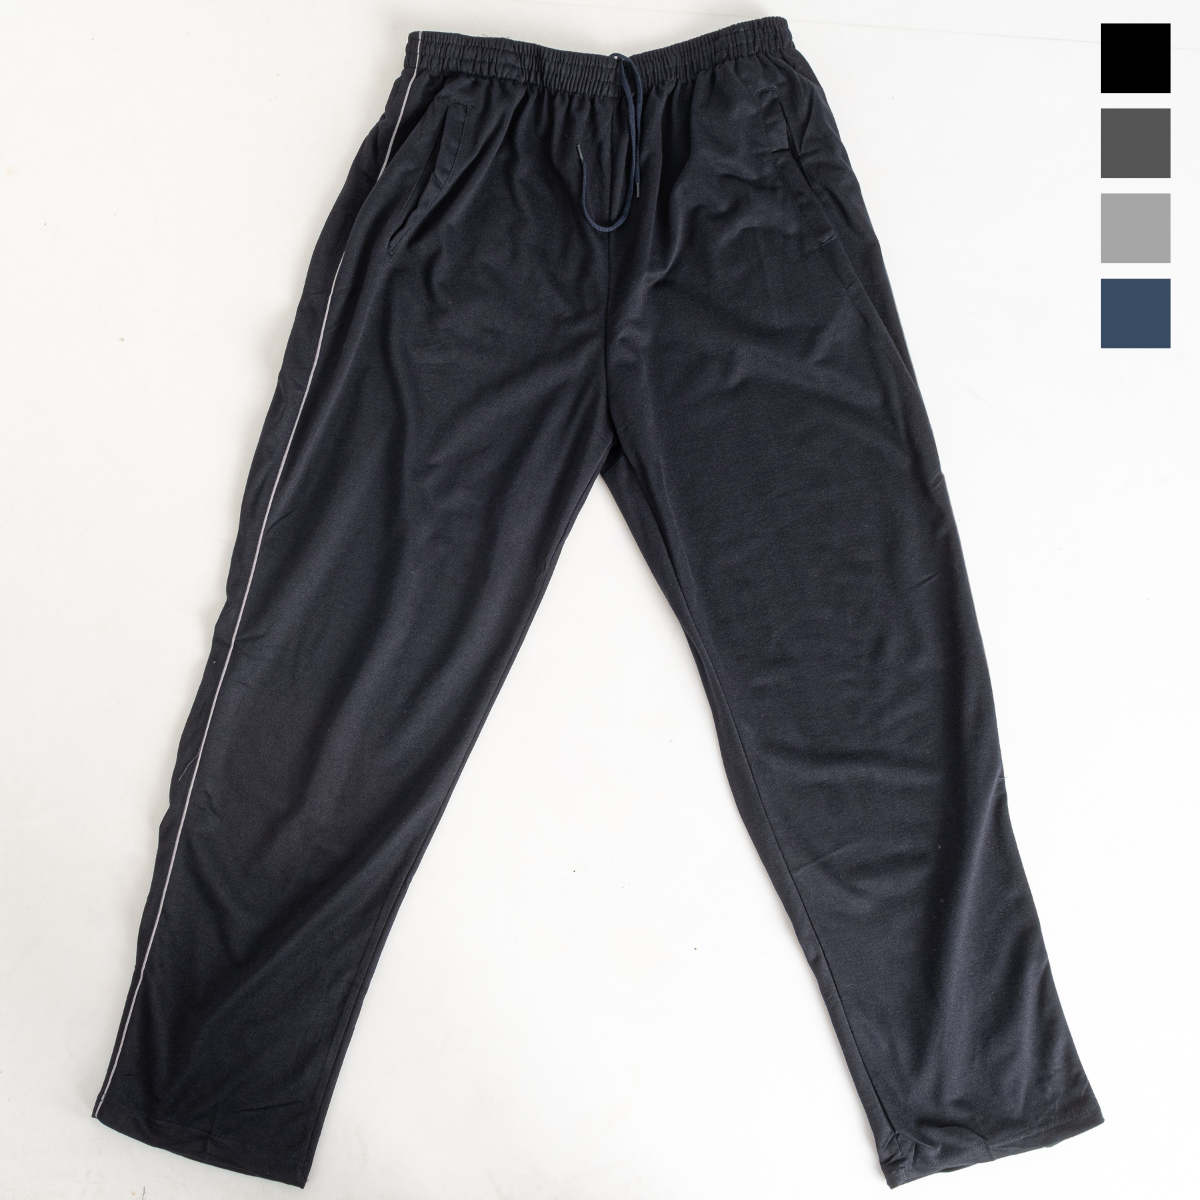 0668 четыре цвета спортивные штаны (DUNAUONE, двунитка, 6 ед. размеры батал: 4XL. 5XL. 5XL. 6XL. 7XL. 9XL.)   